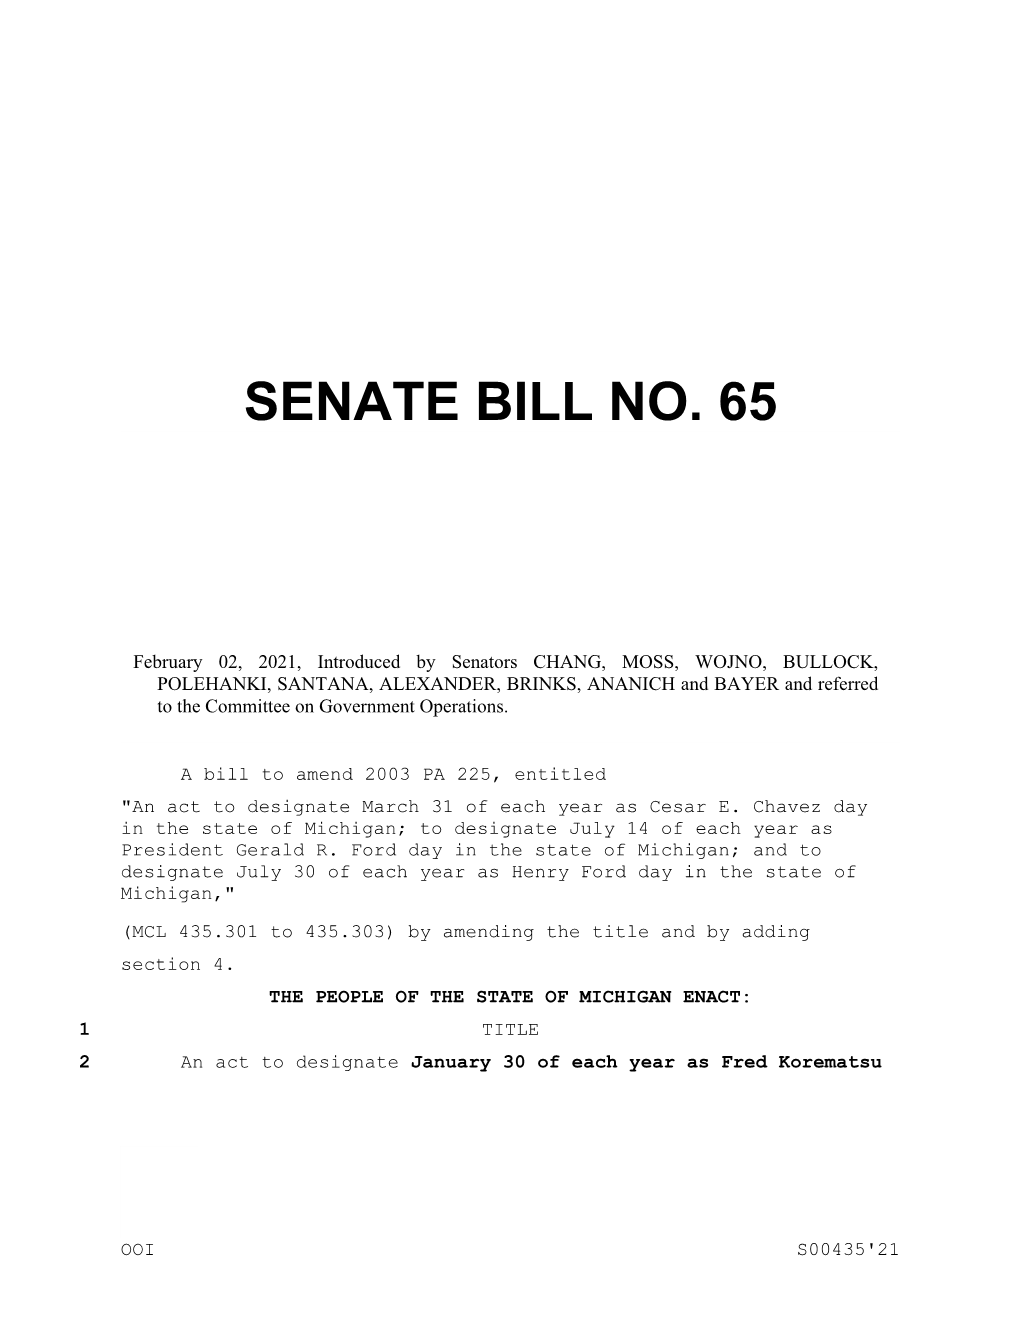 Senate Bill No. 65